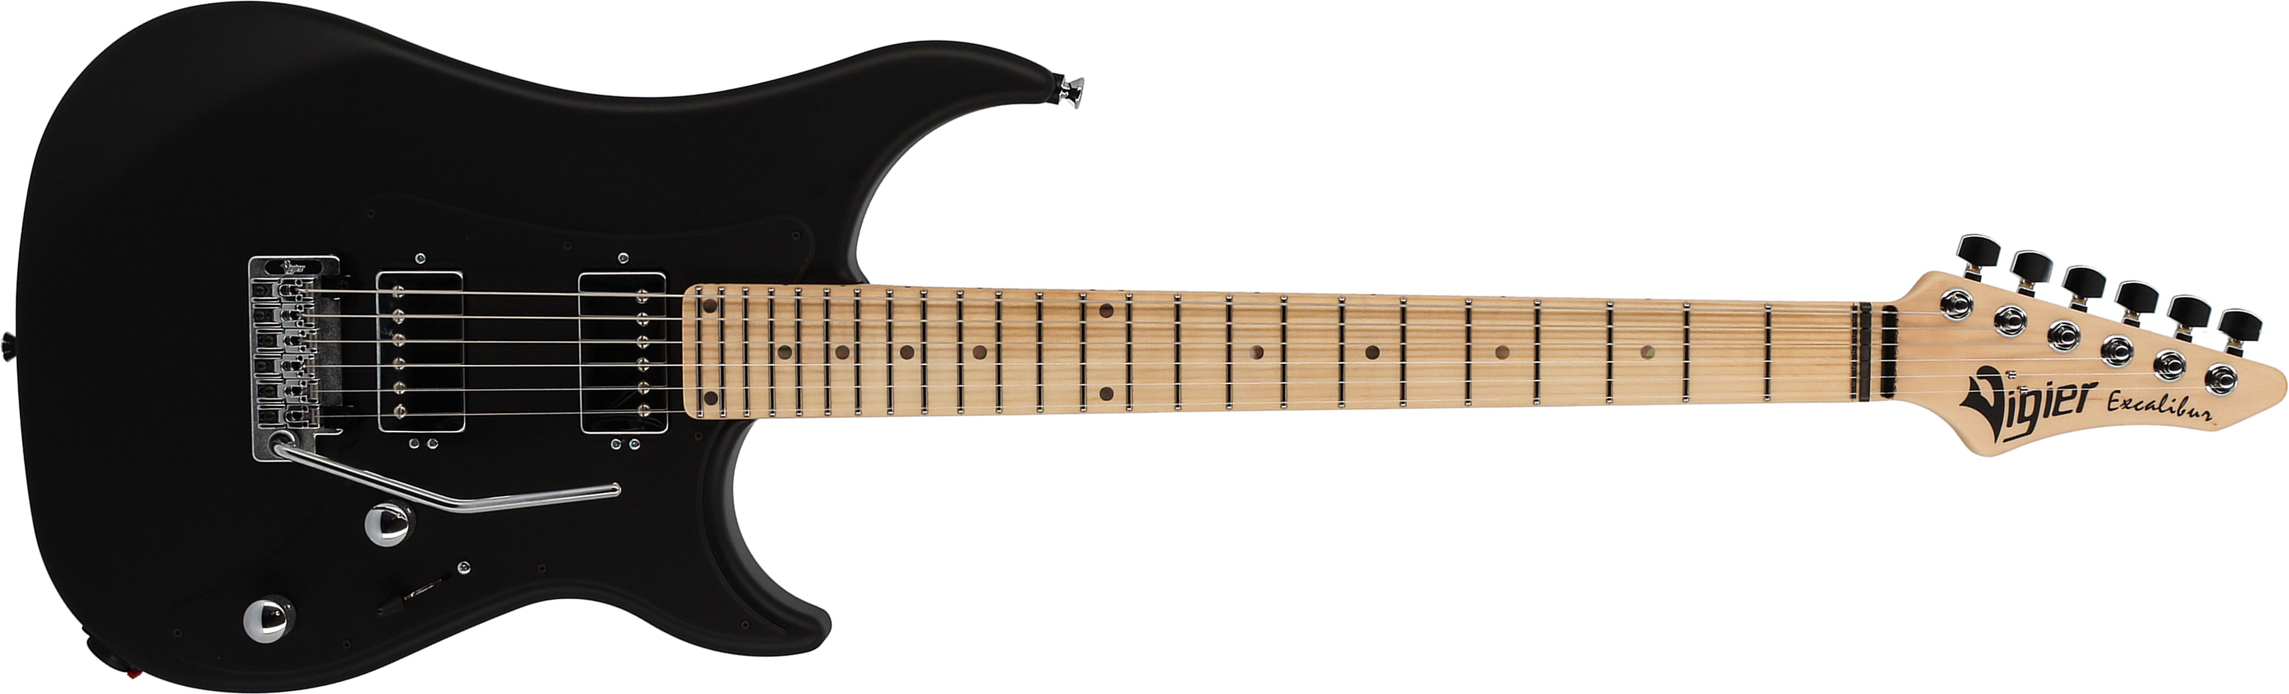 Vigier Excalibur Indus 2h Trem Mn - Black Matte - Double cut electric guitar - Main picture